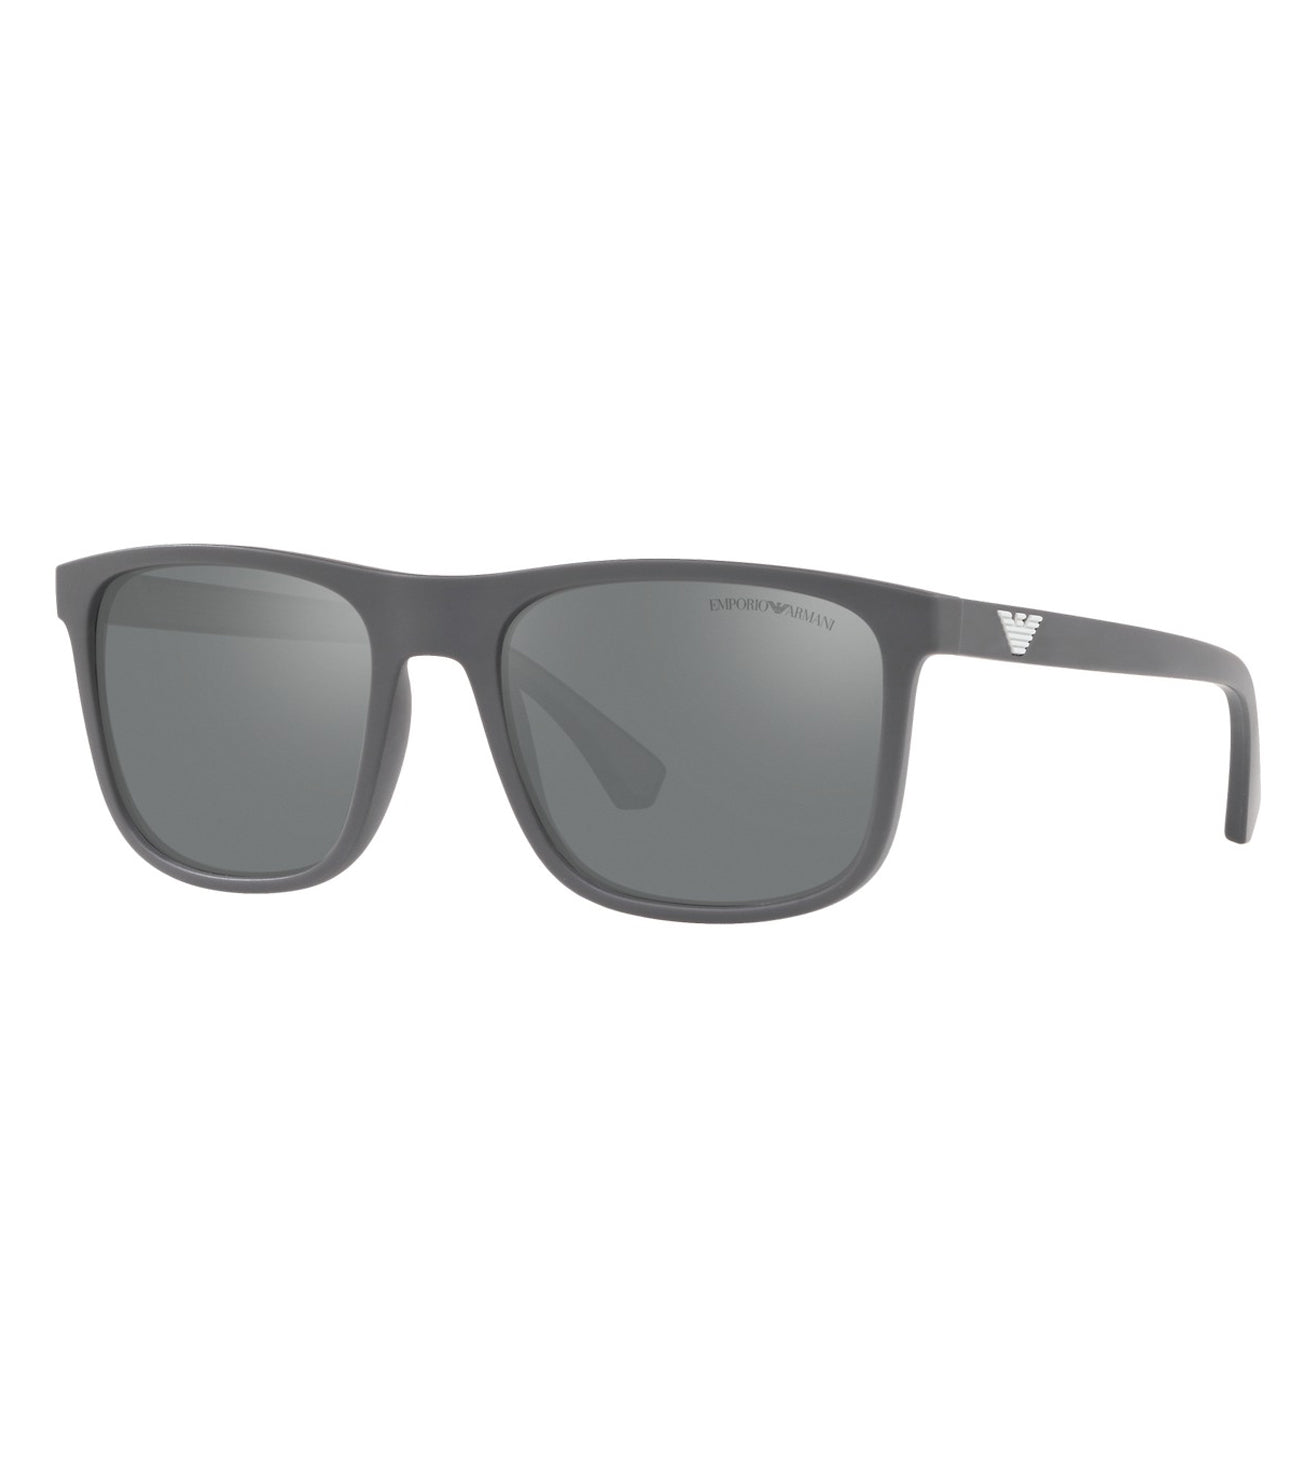 Emporio Armani Men's Grey Silver-Mirrored Square Sunglasses